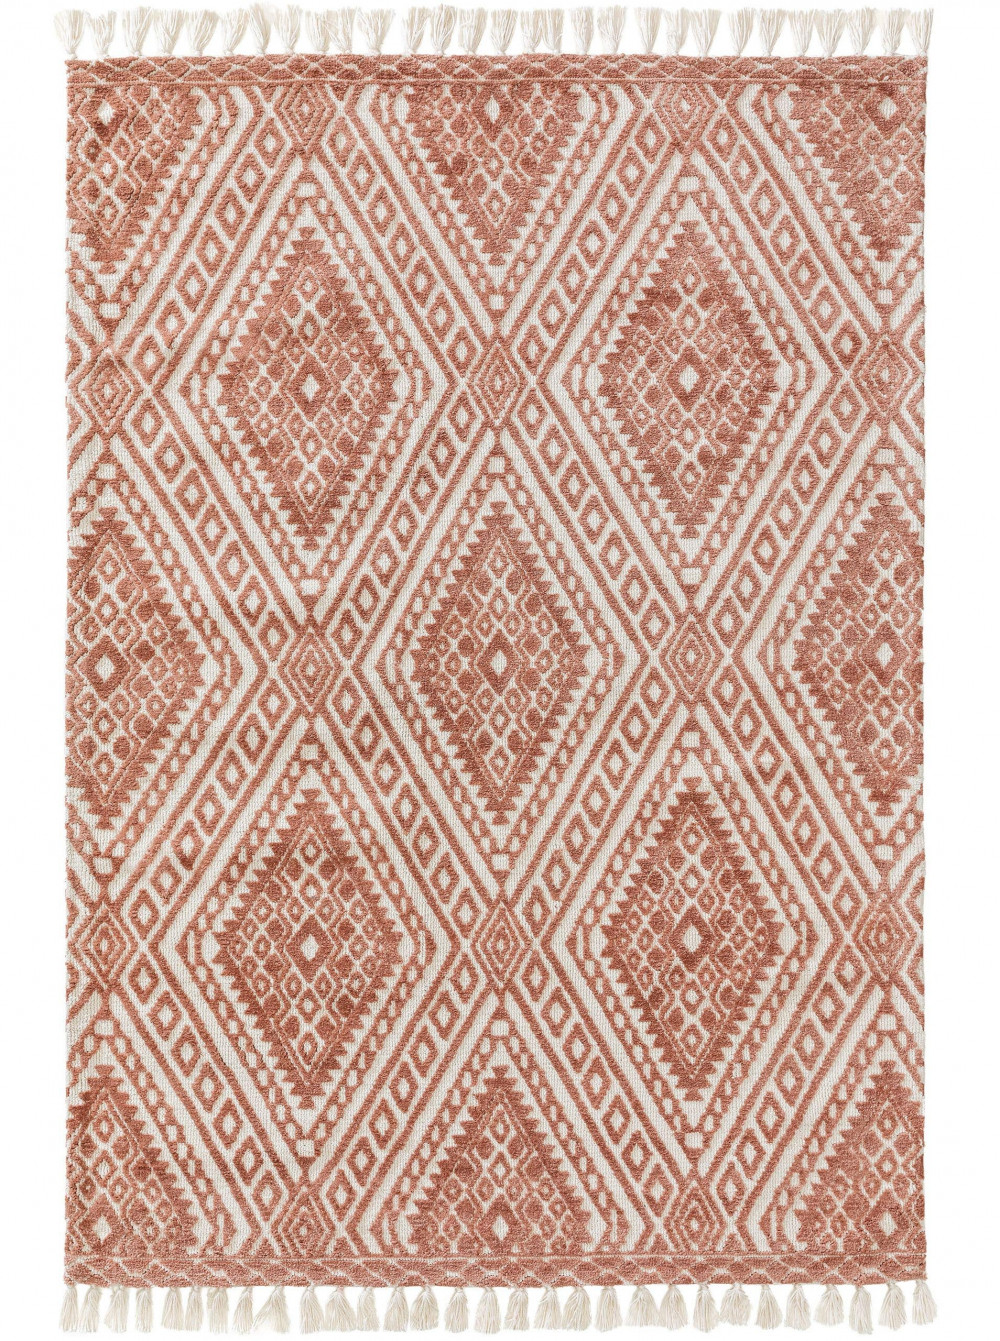 Elias szőnyeg Terracotta 15x15 cm minta